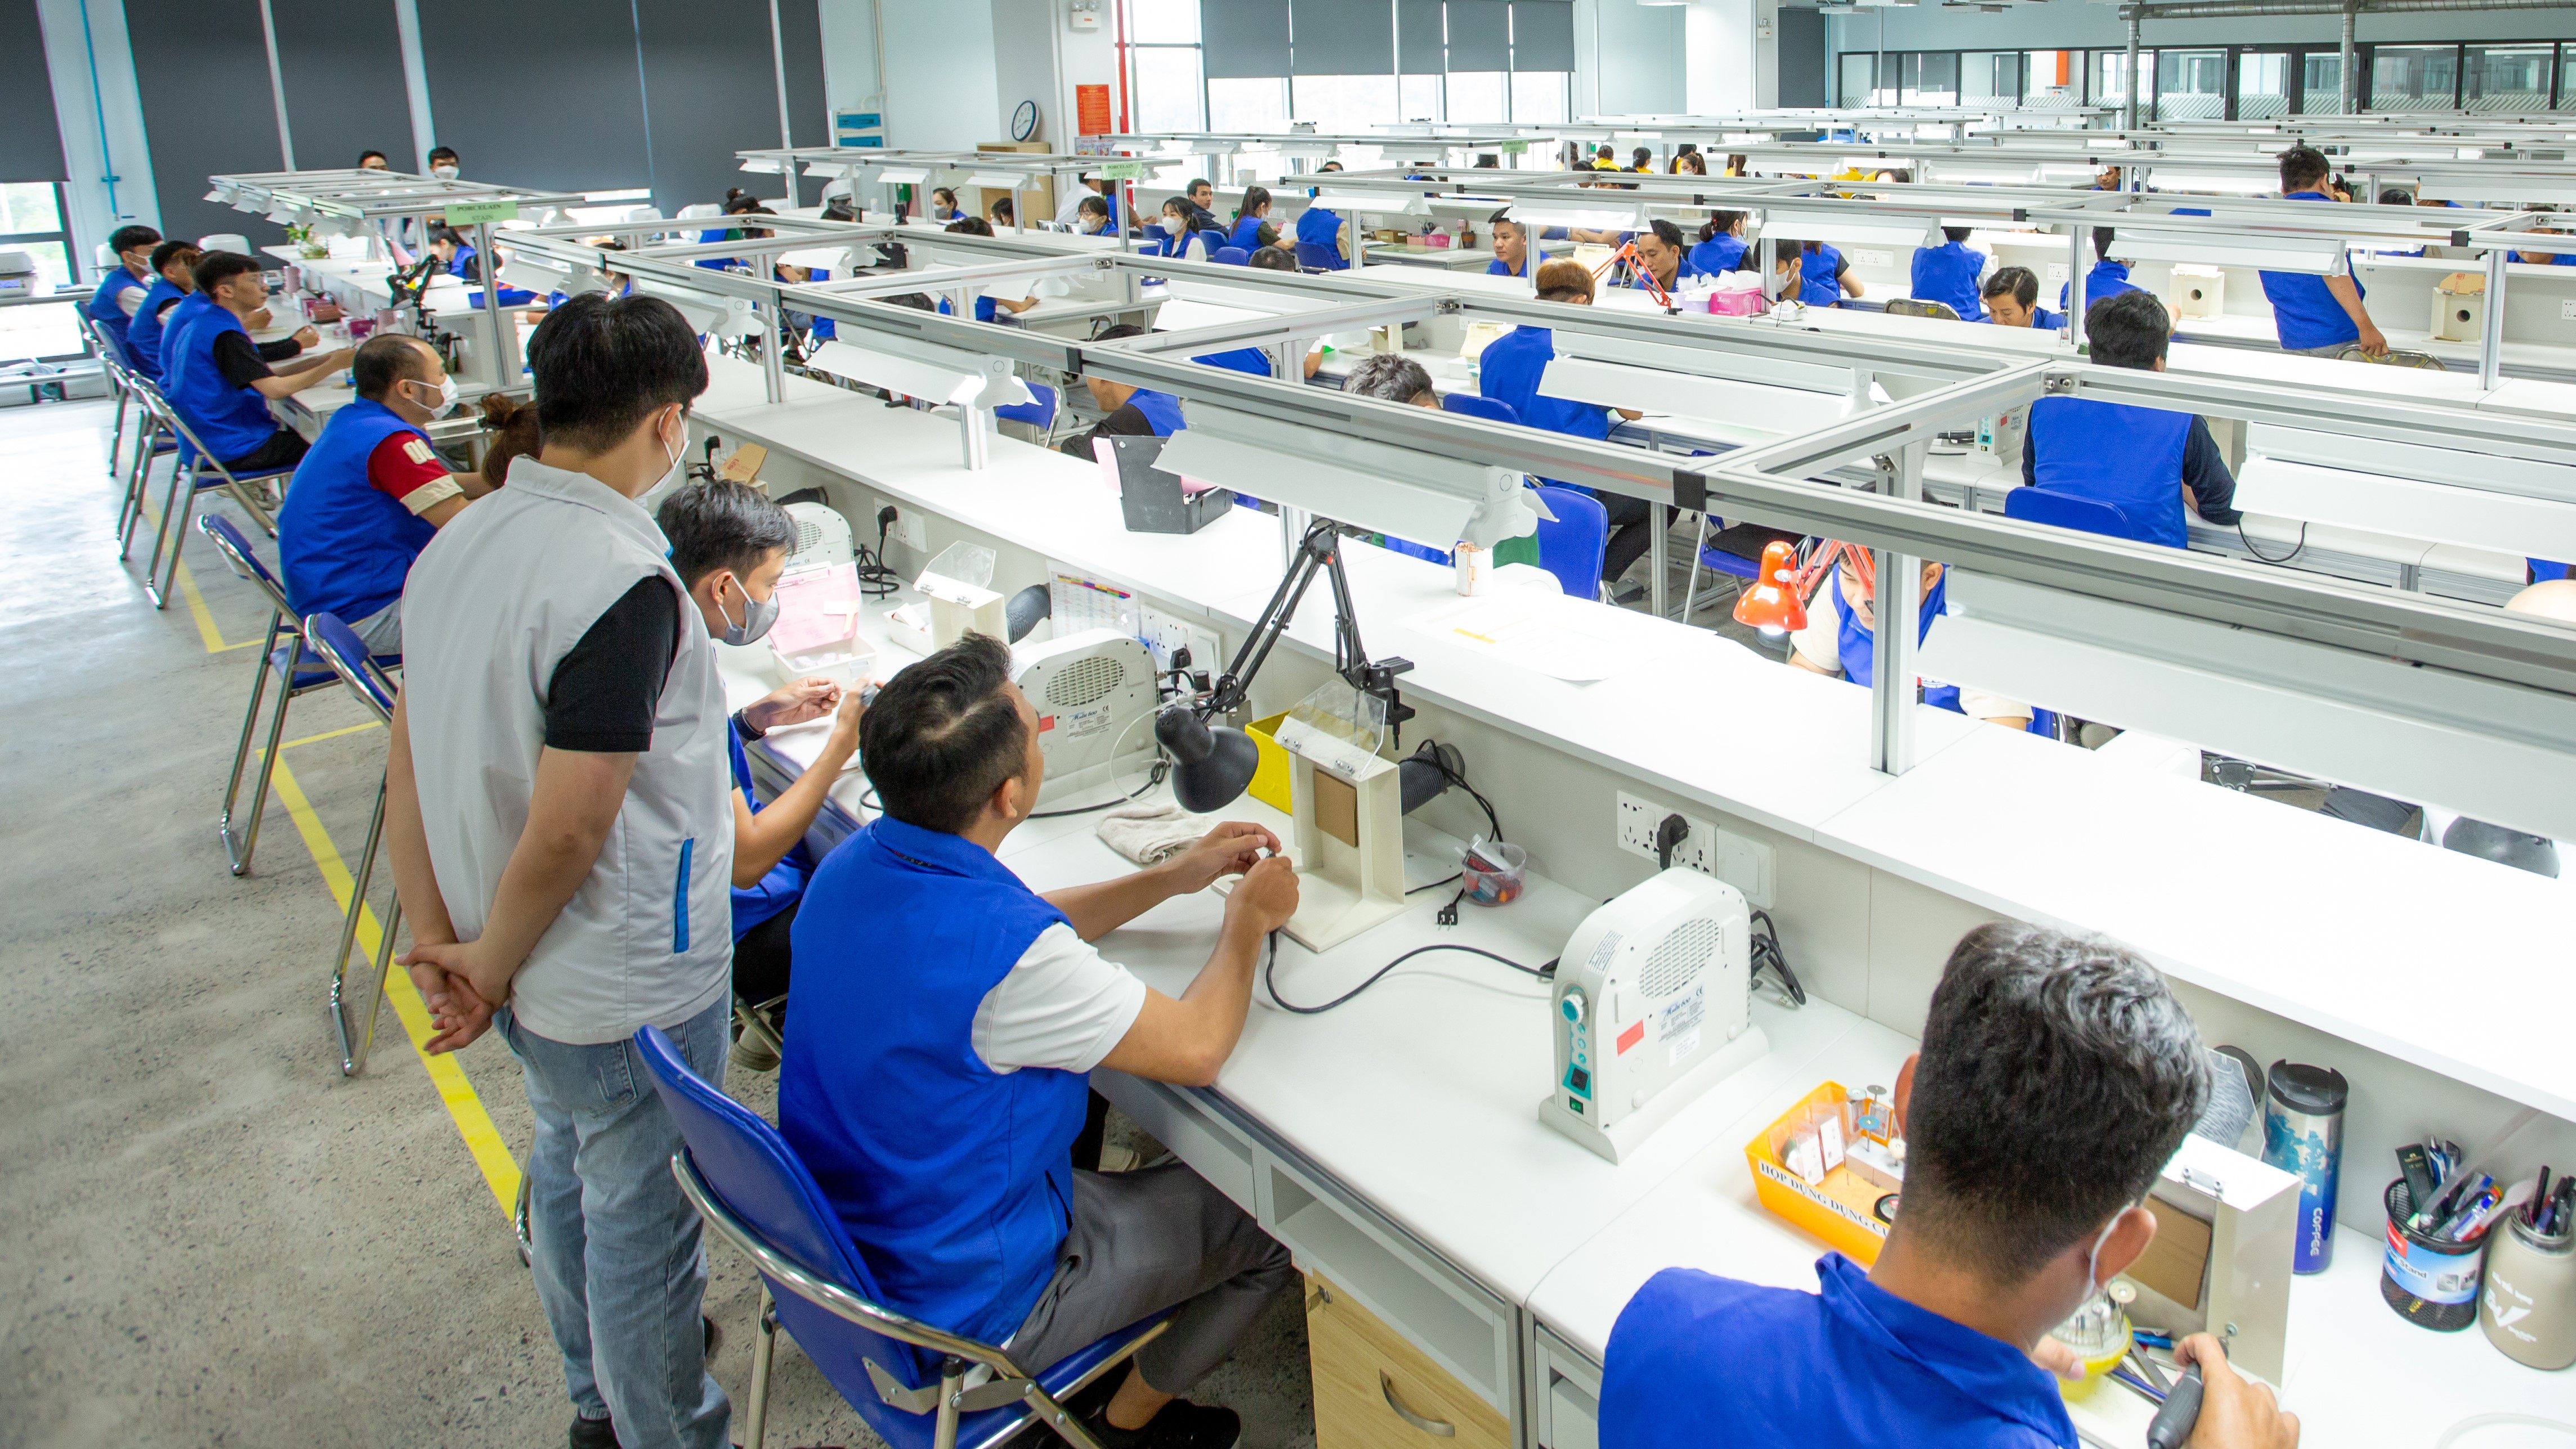 ACESO生产基地开业仪式在越南成功举行